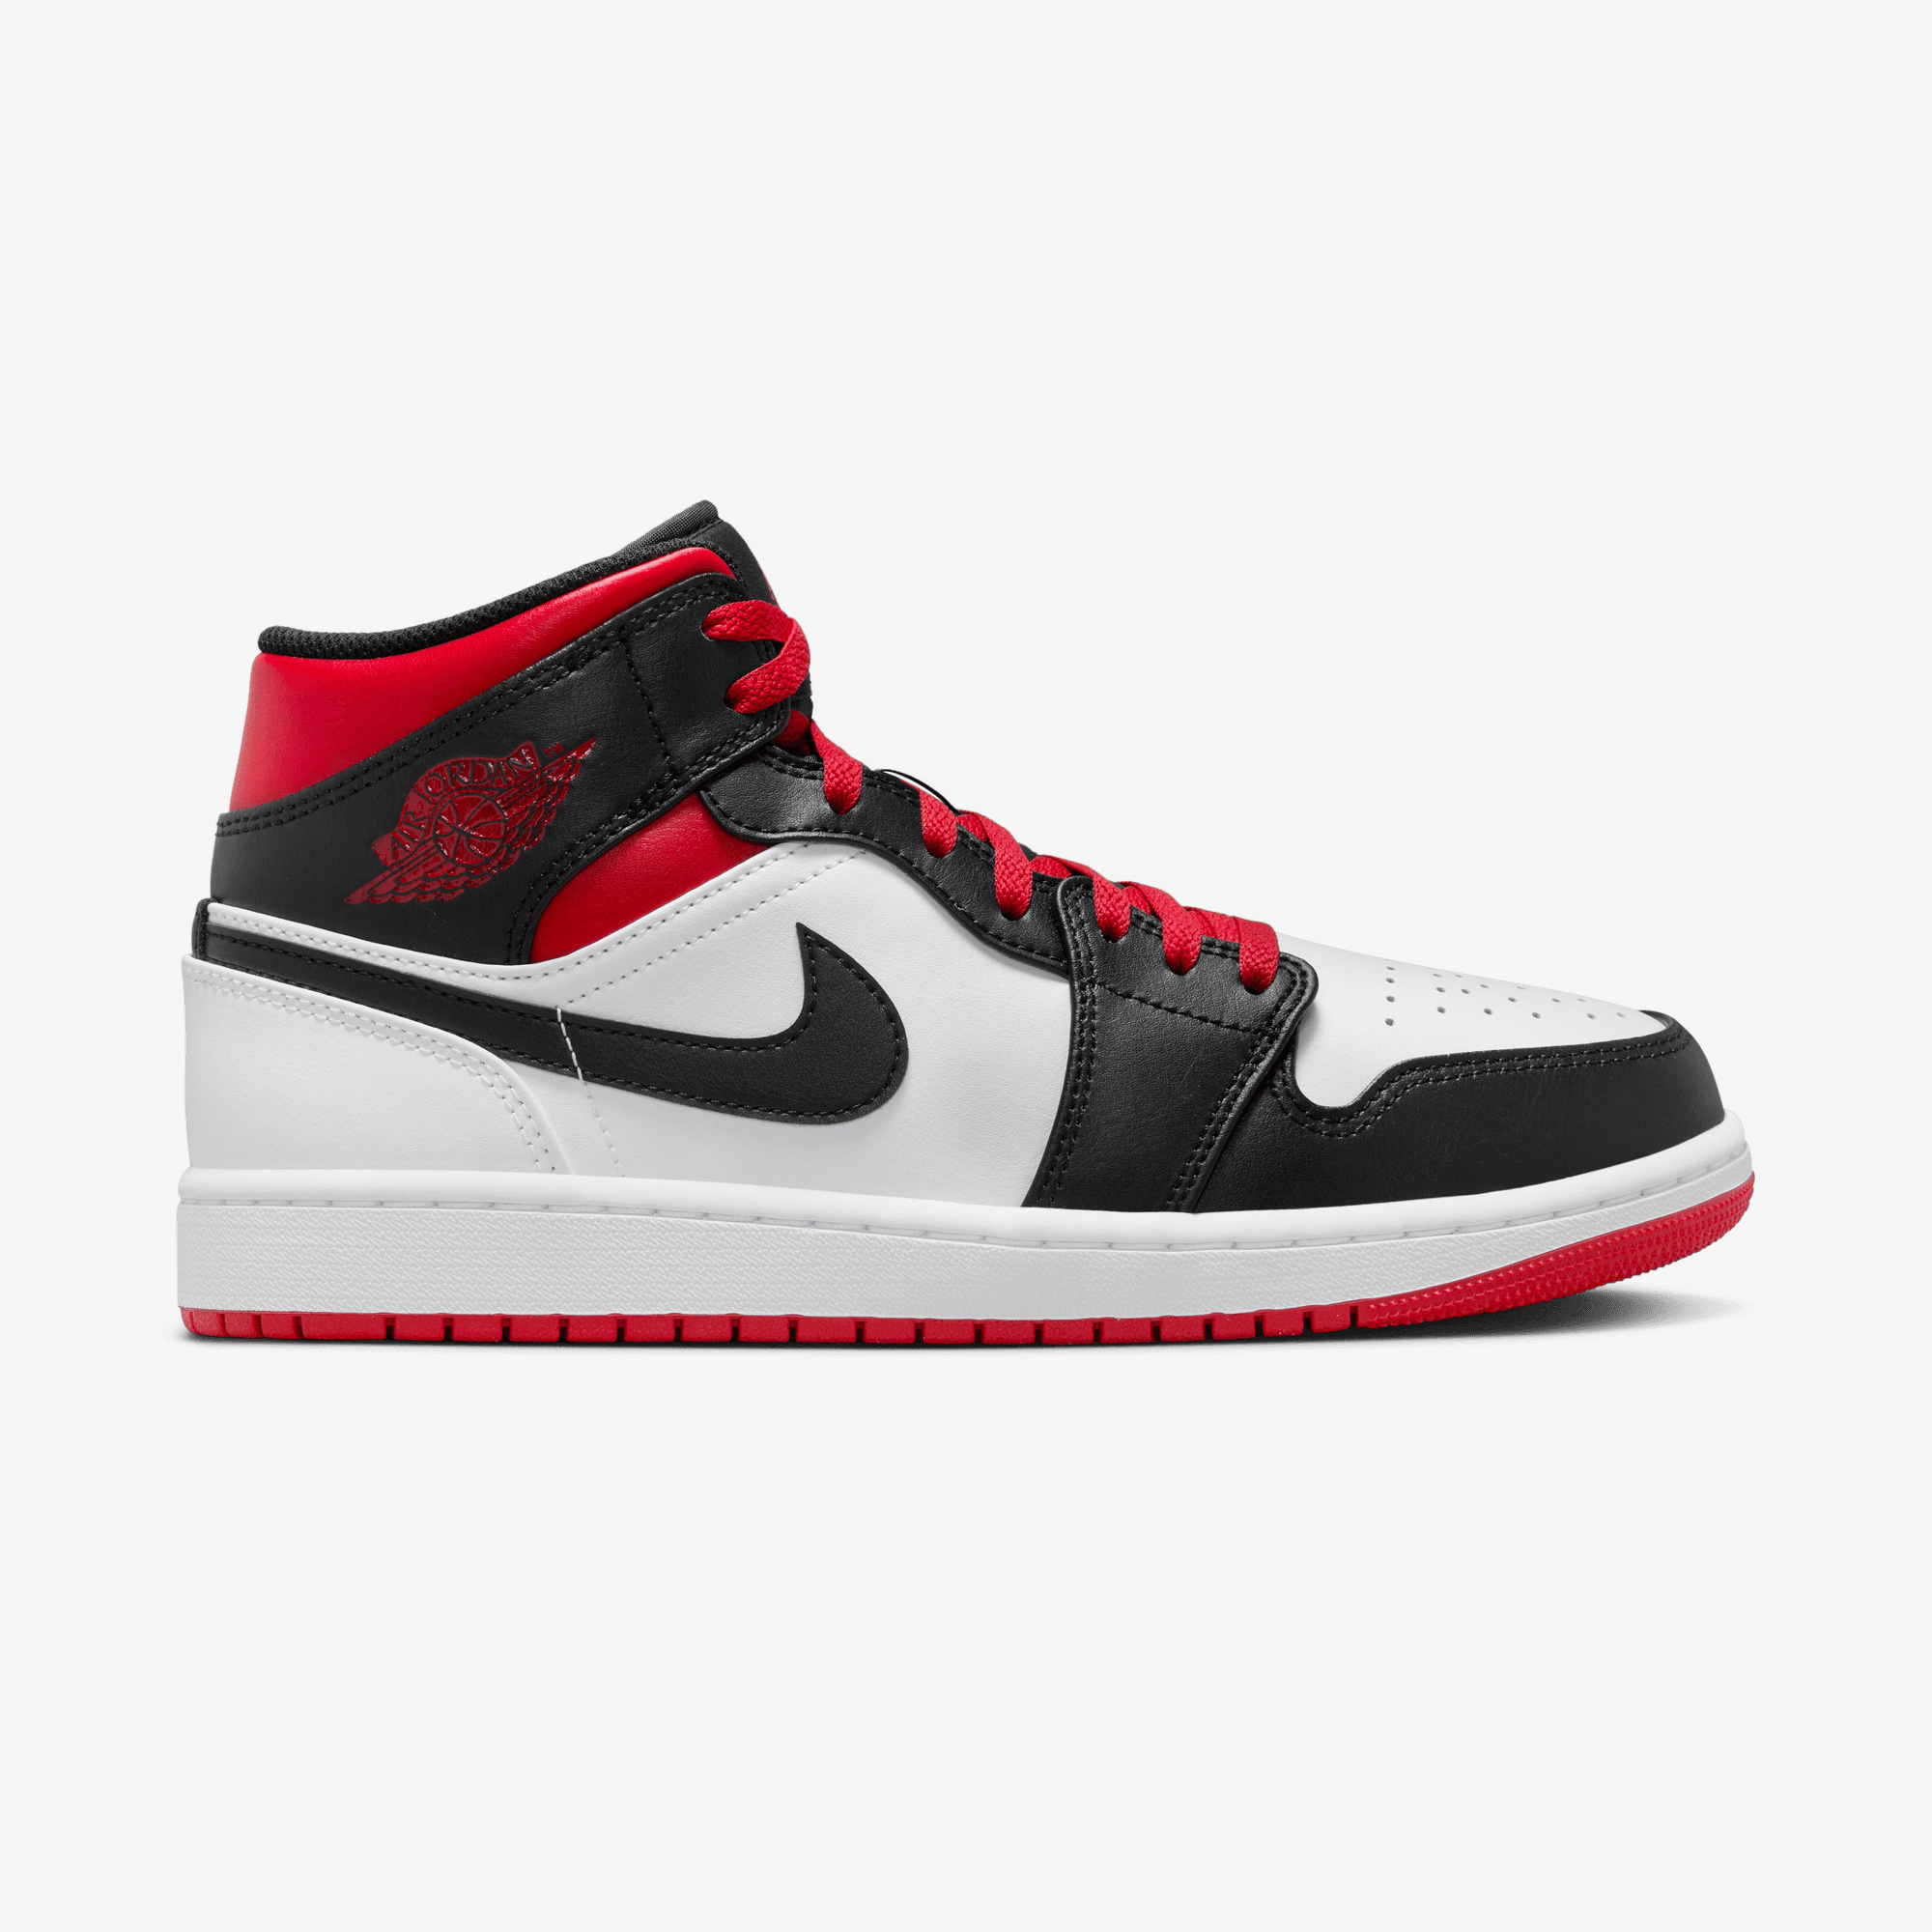 Jordan 1 Mid Erkek Beyaz/Siyah/Kırmızı Sneaker